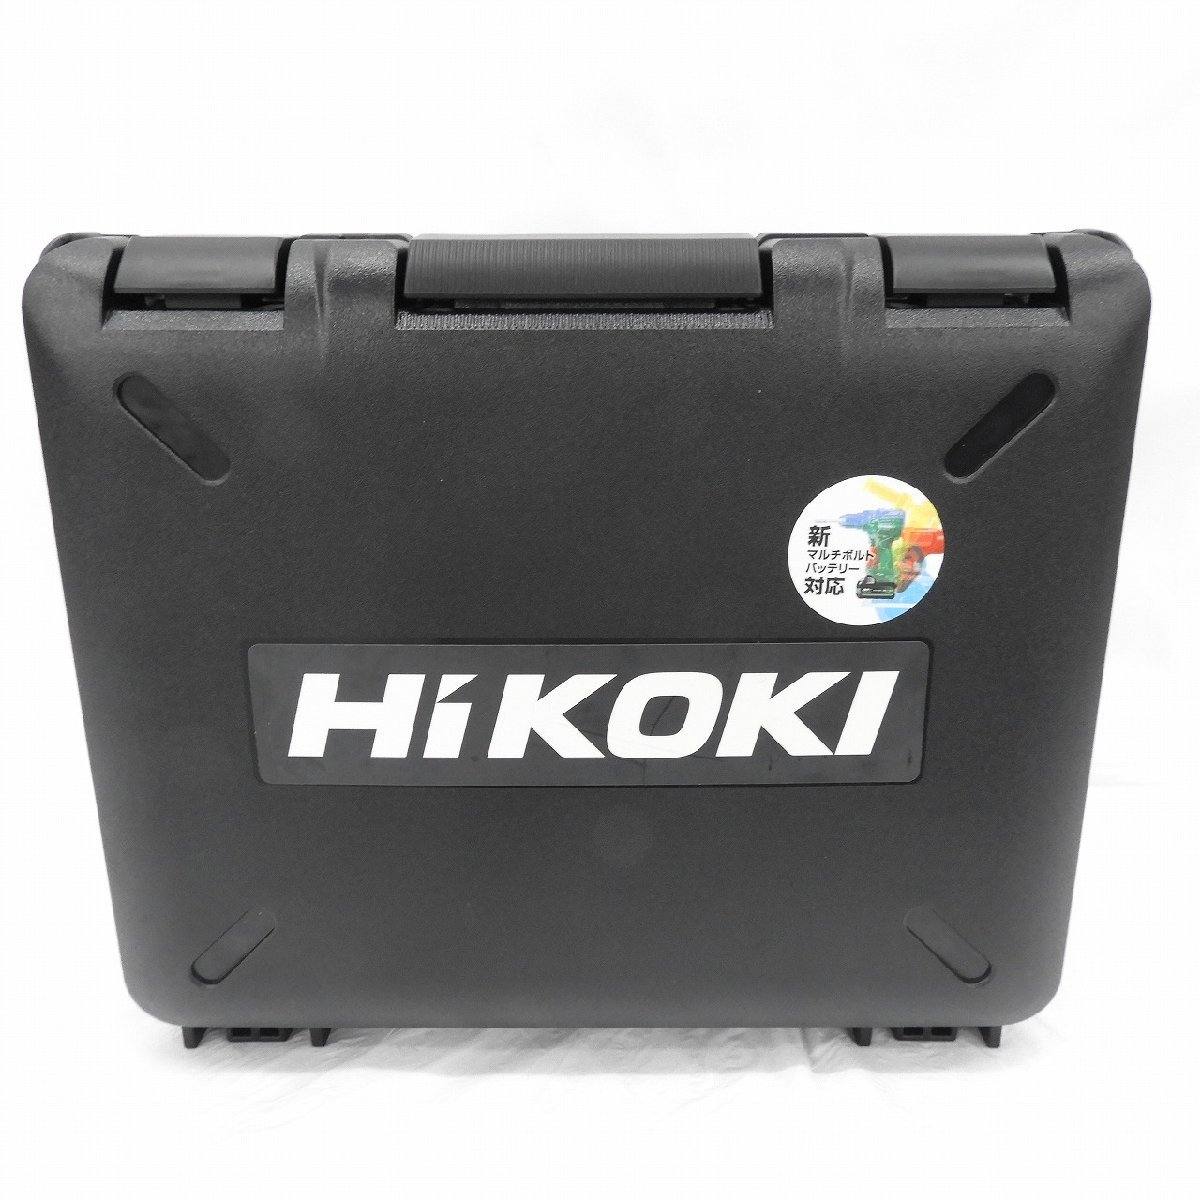 【極美品】HiKOKI ハイコーキ コードレスインパクトドライバ WH36DC 2XPGSZ フォレストグリーン オマケドリルビットセット913155869 0117_画像9